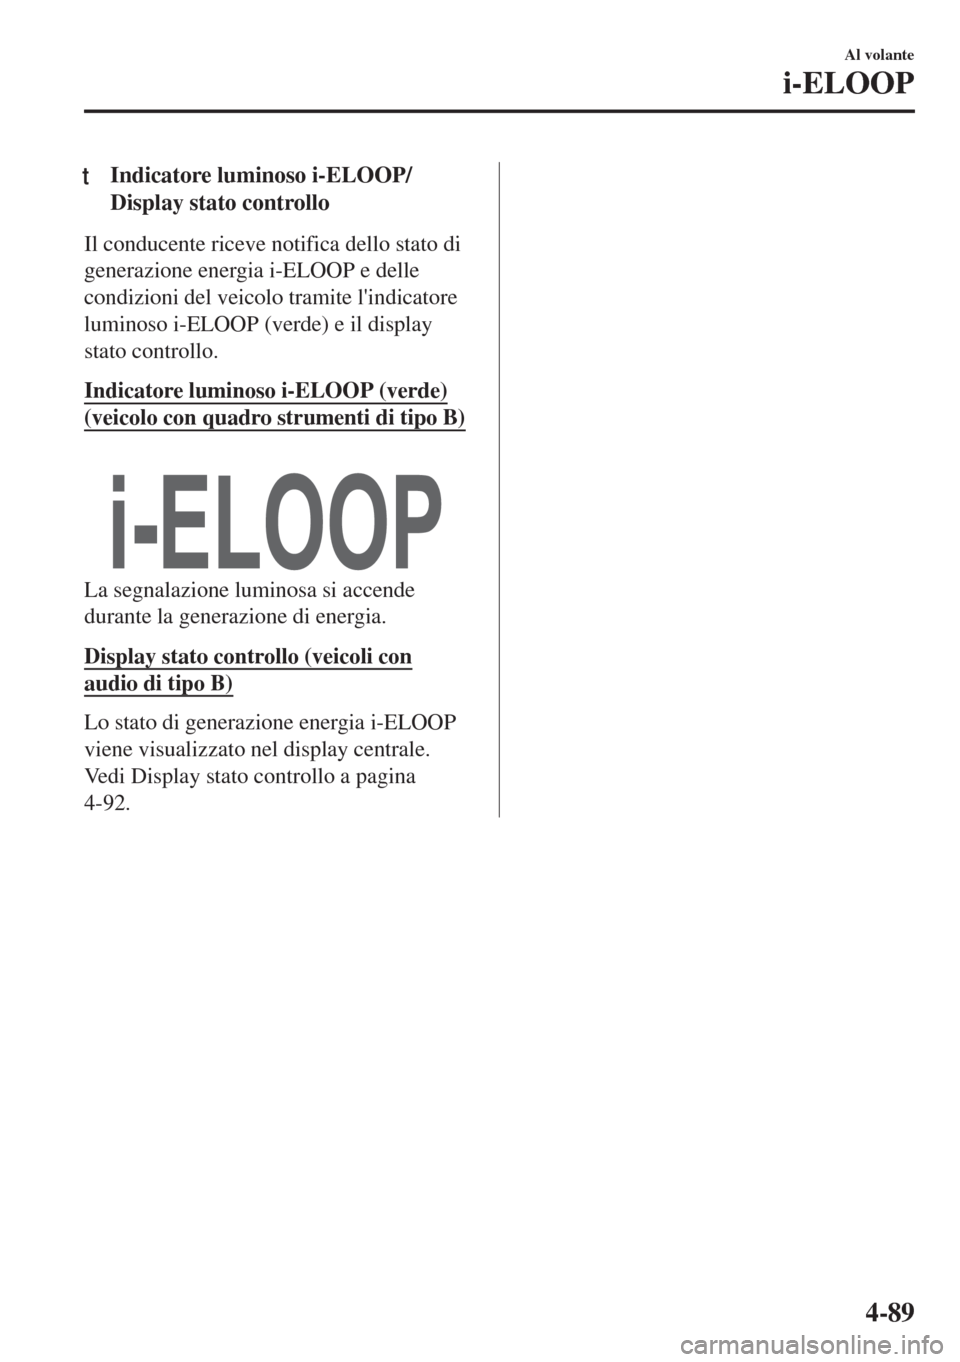 MAZDA MODEL MX-5 2018  Manuale del proprietario (in Italian) tIndicatore luminoso i-ELOOP/
Display stato controllo
Il conducente riceve notifica dello stato di
generazione energia i-ELOOP e delle
condizioni del veicolo tramite lindicatore
luminoso i-ELOOP (ver